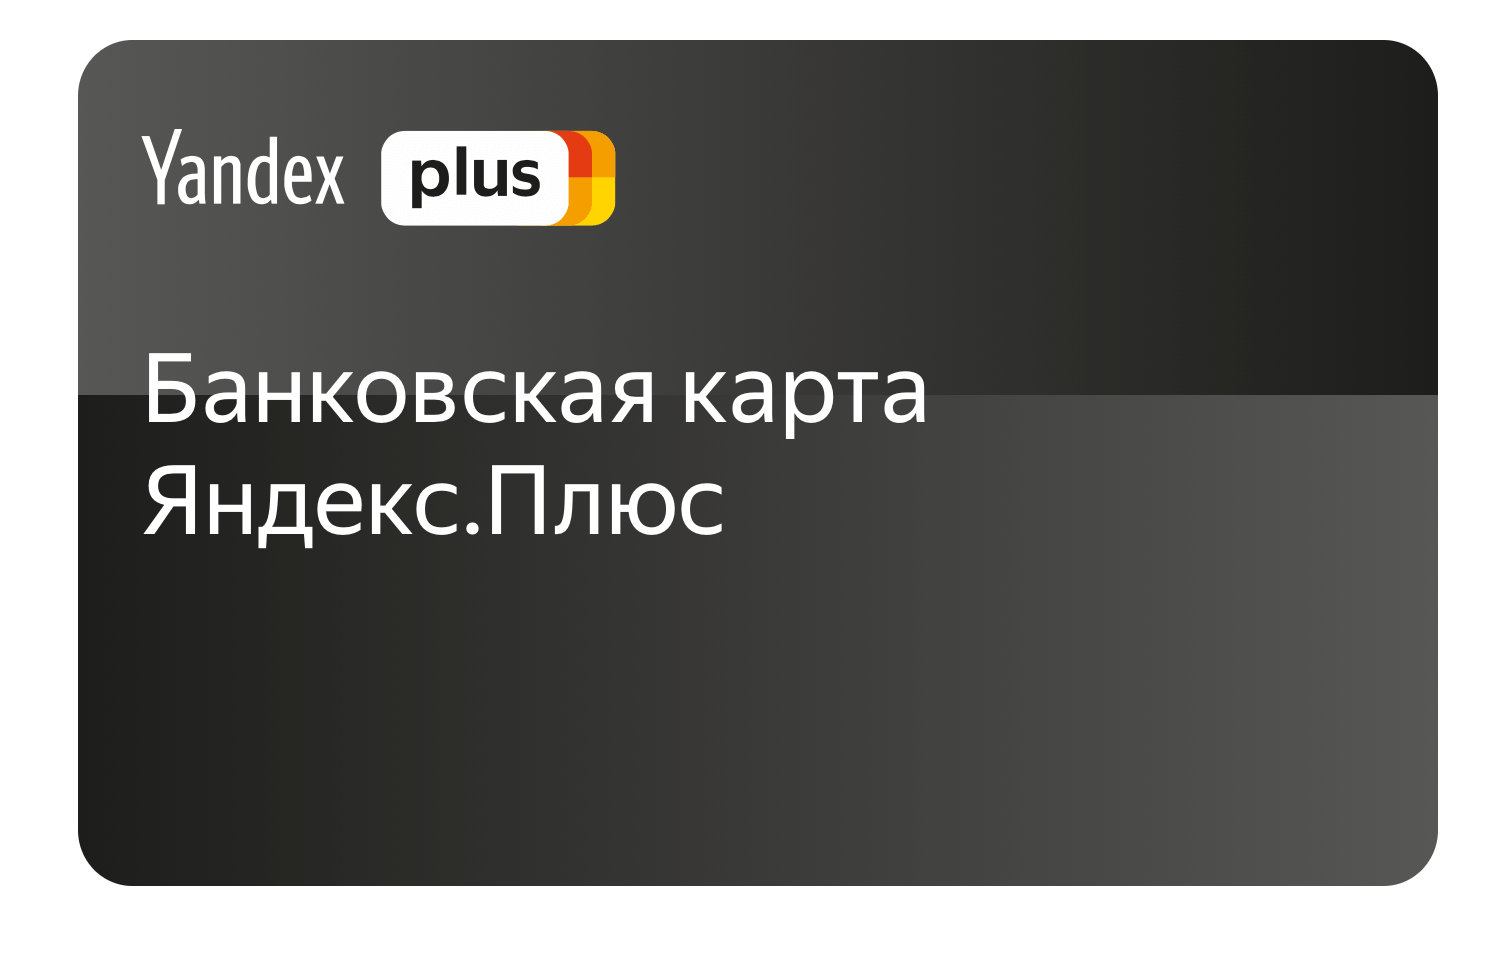 Яндекс.плюс тинькофф отзывы